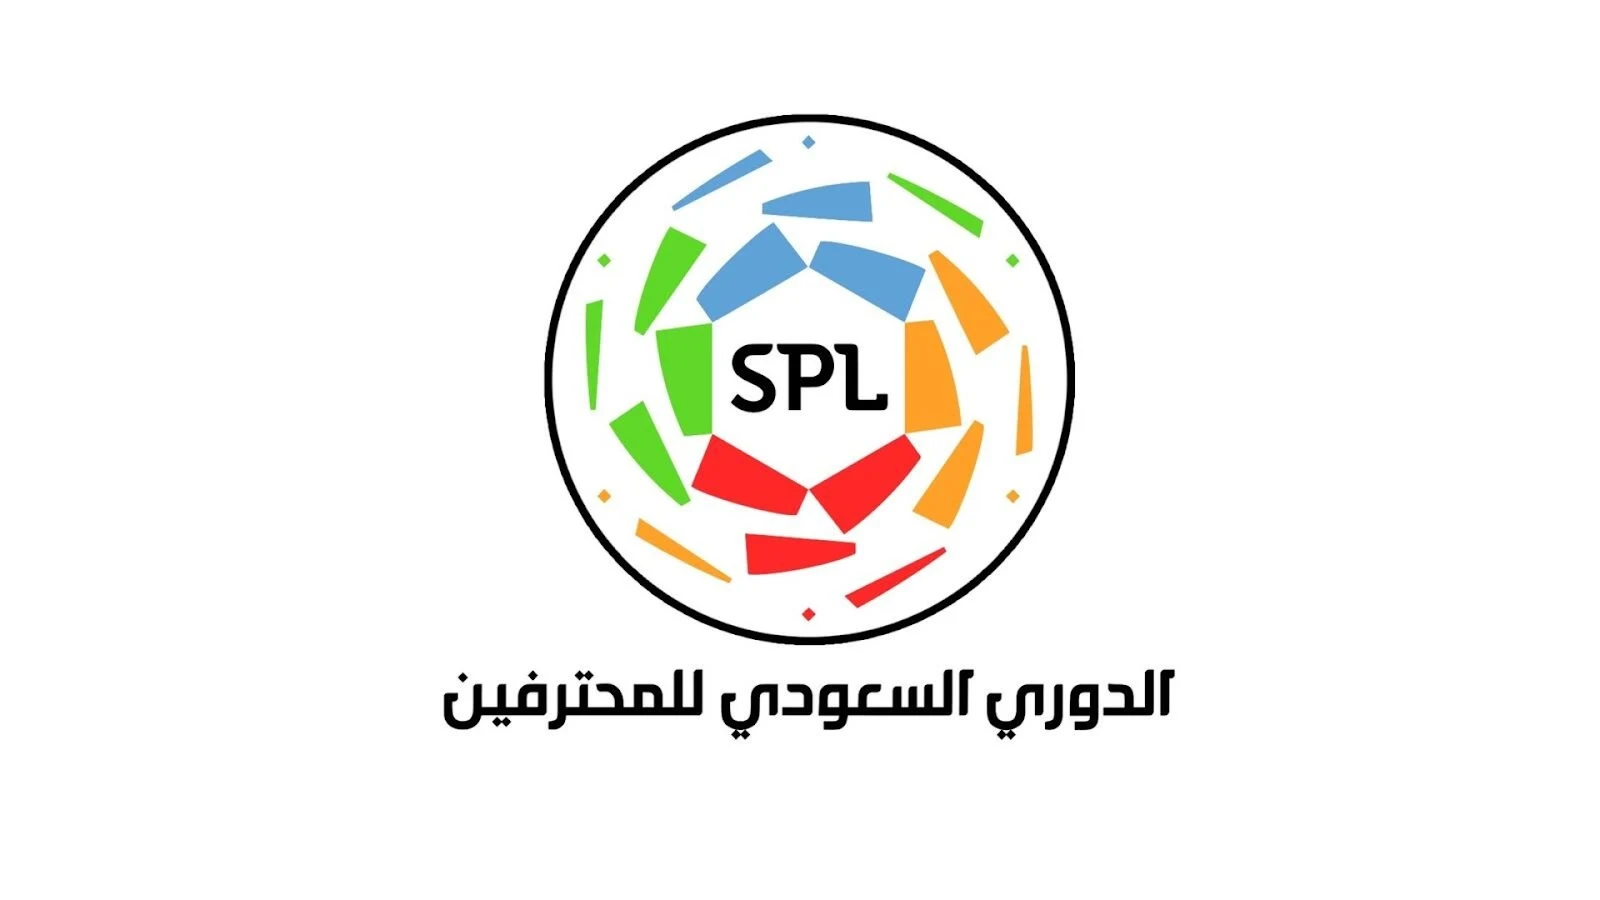 اخر اخبار الرياضة اليوم الاثنين 26-12-2022 في الدوري السعودي